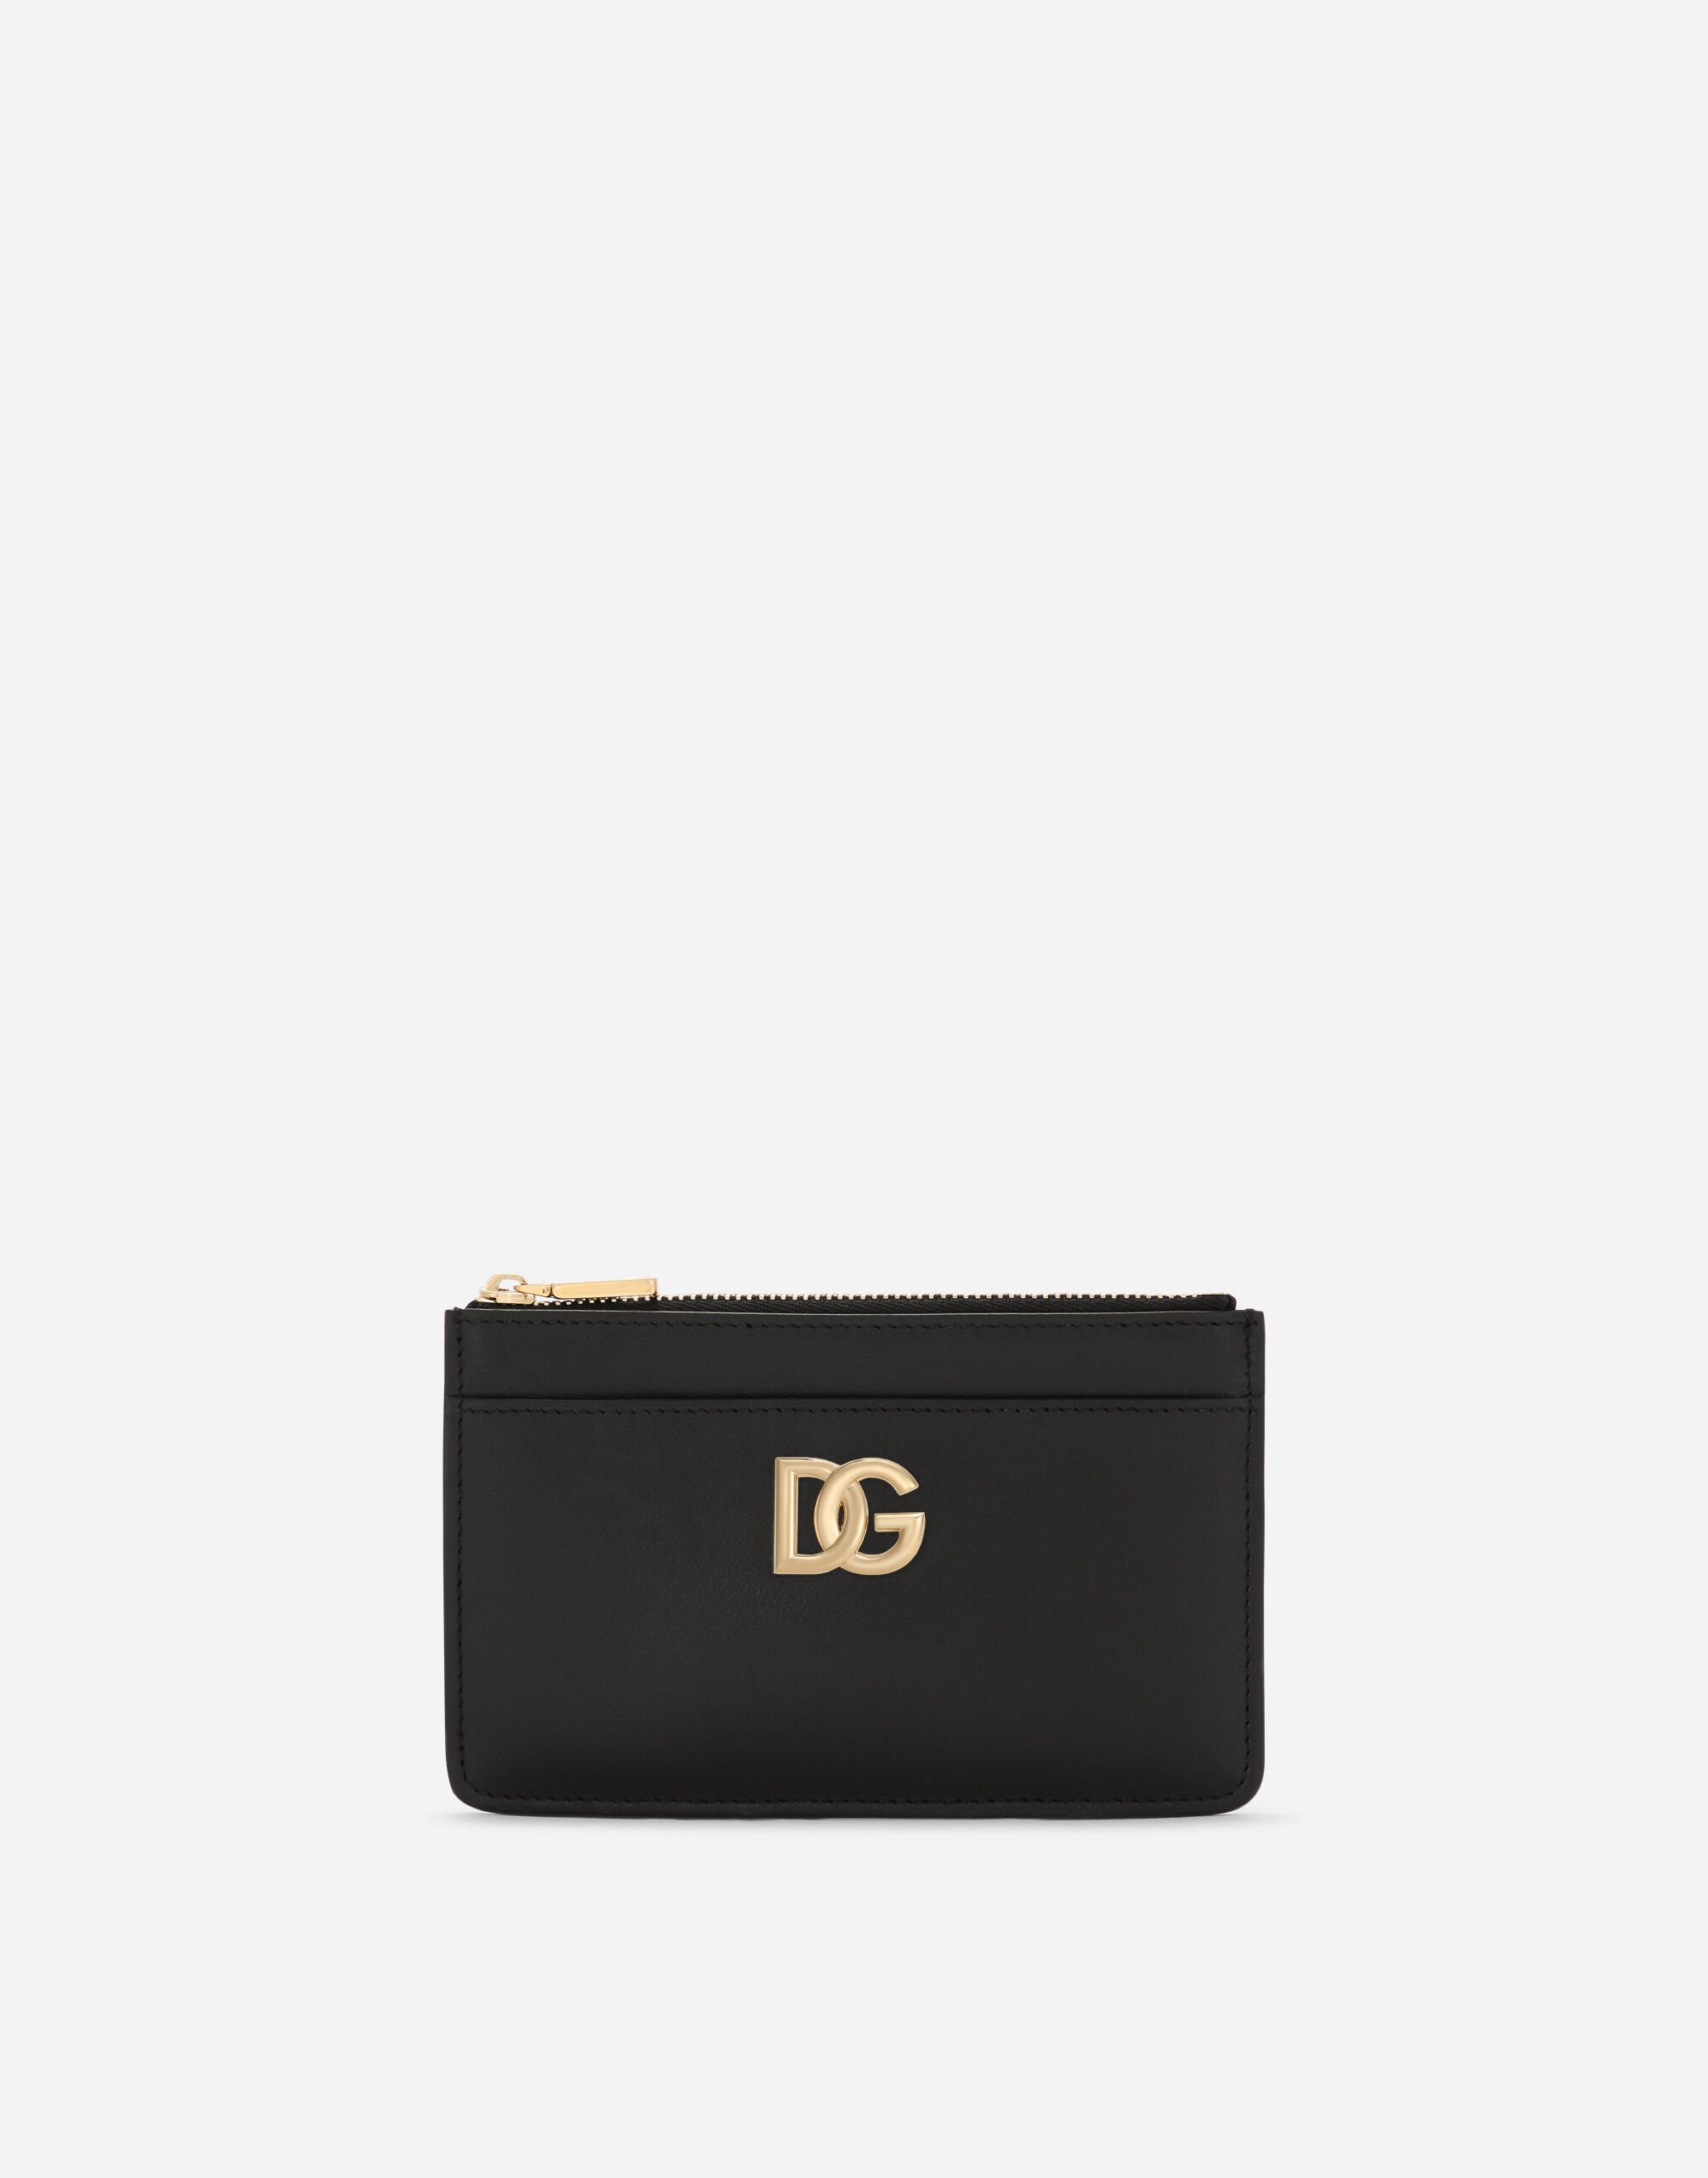 Dolce & Gabbana Calfskin card holder with DG logo Fuchsia BI1265A1001